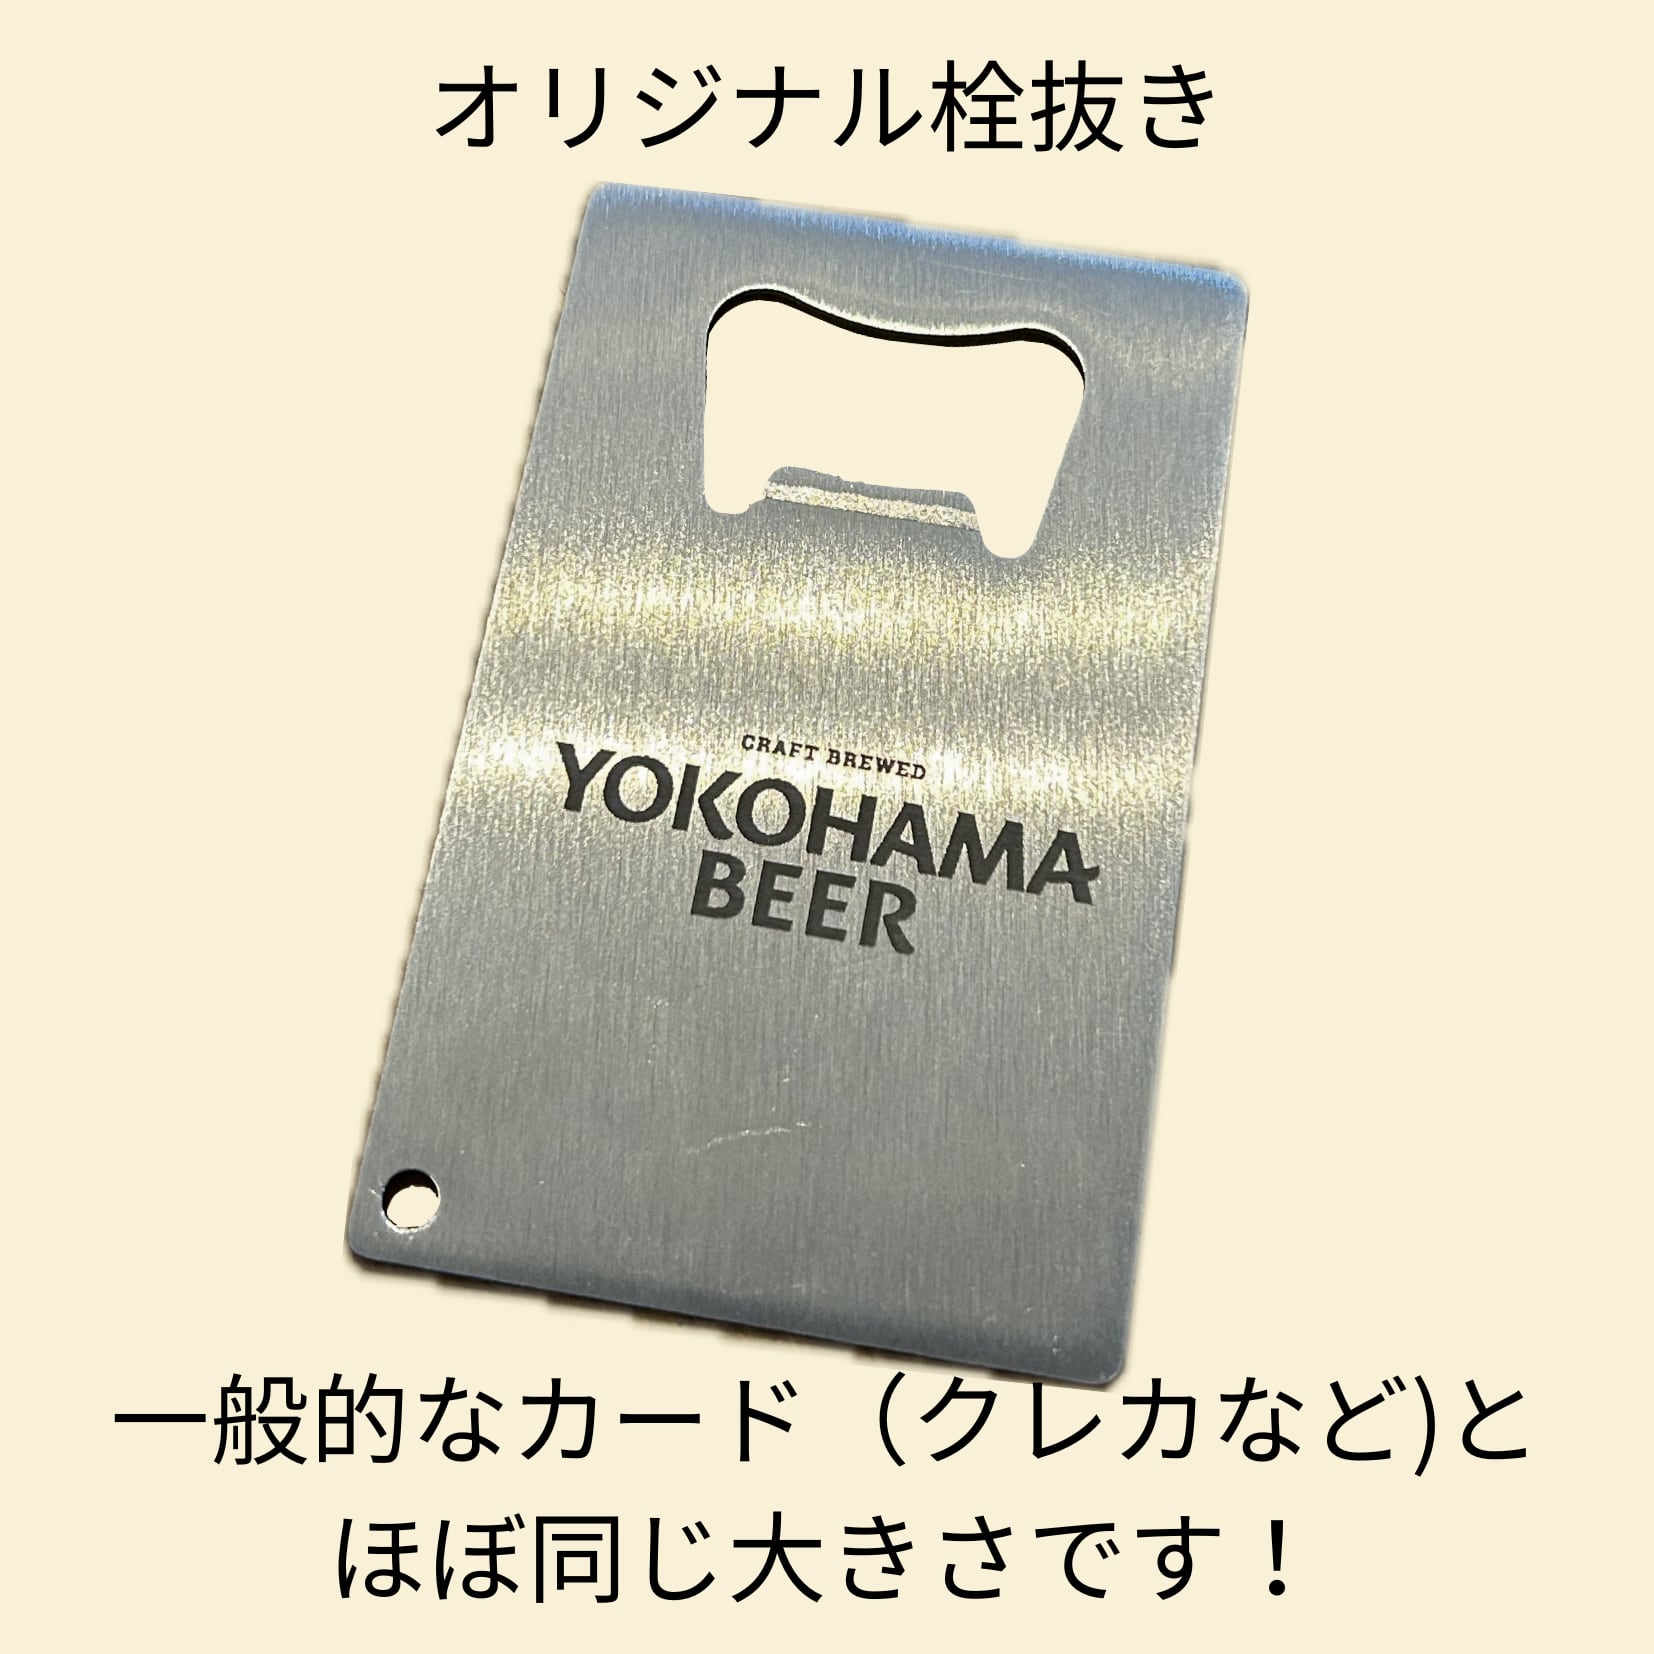 横浜ビール定番スタイル 5銘柄とオリジナル栓抜きセット